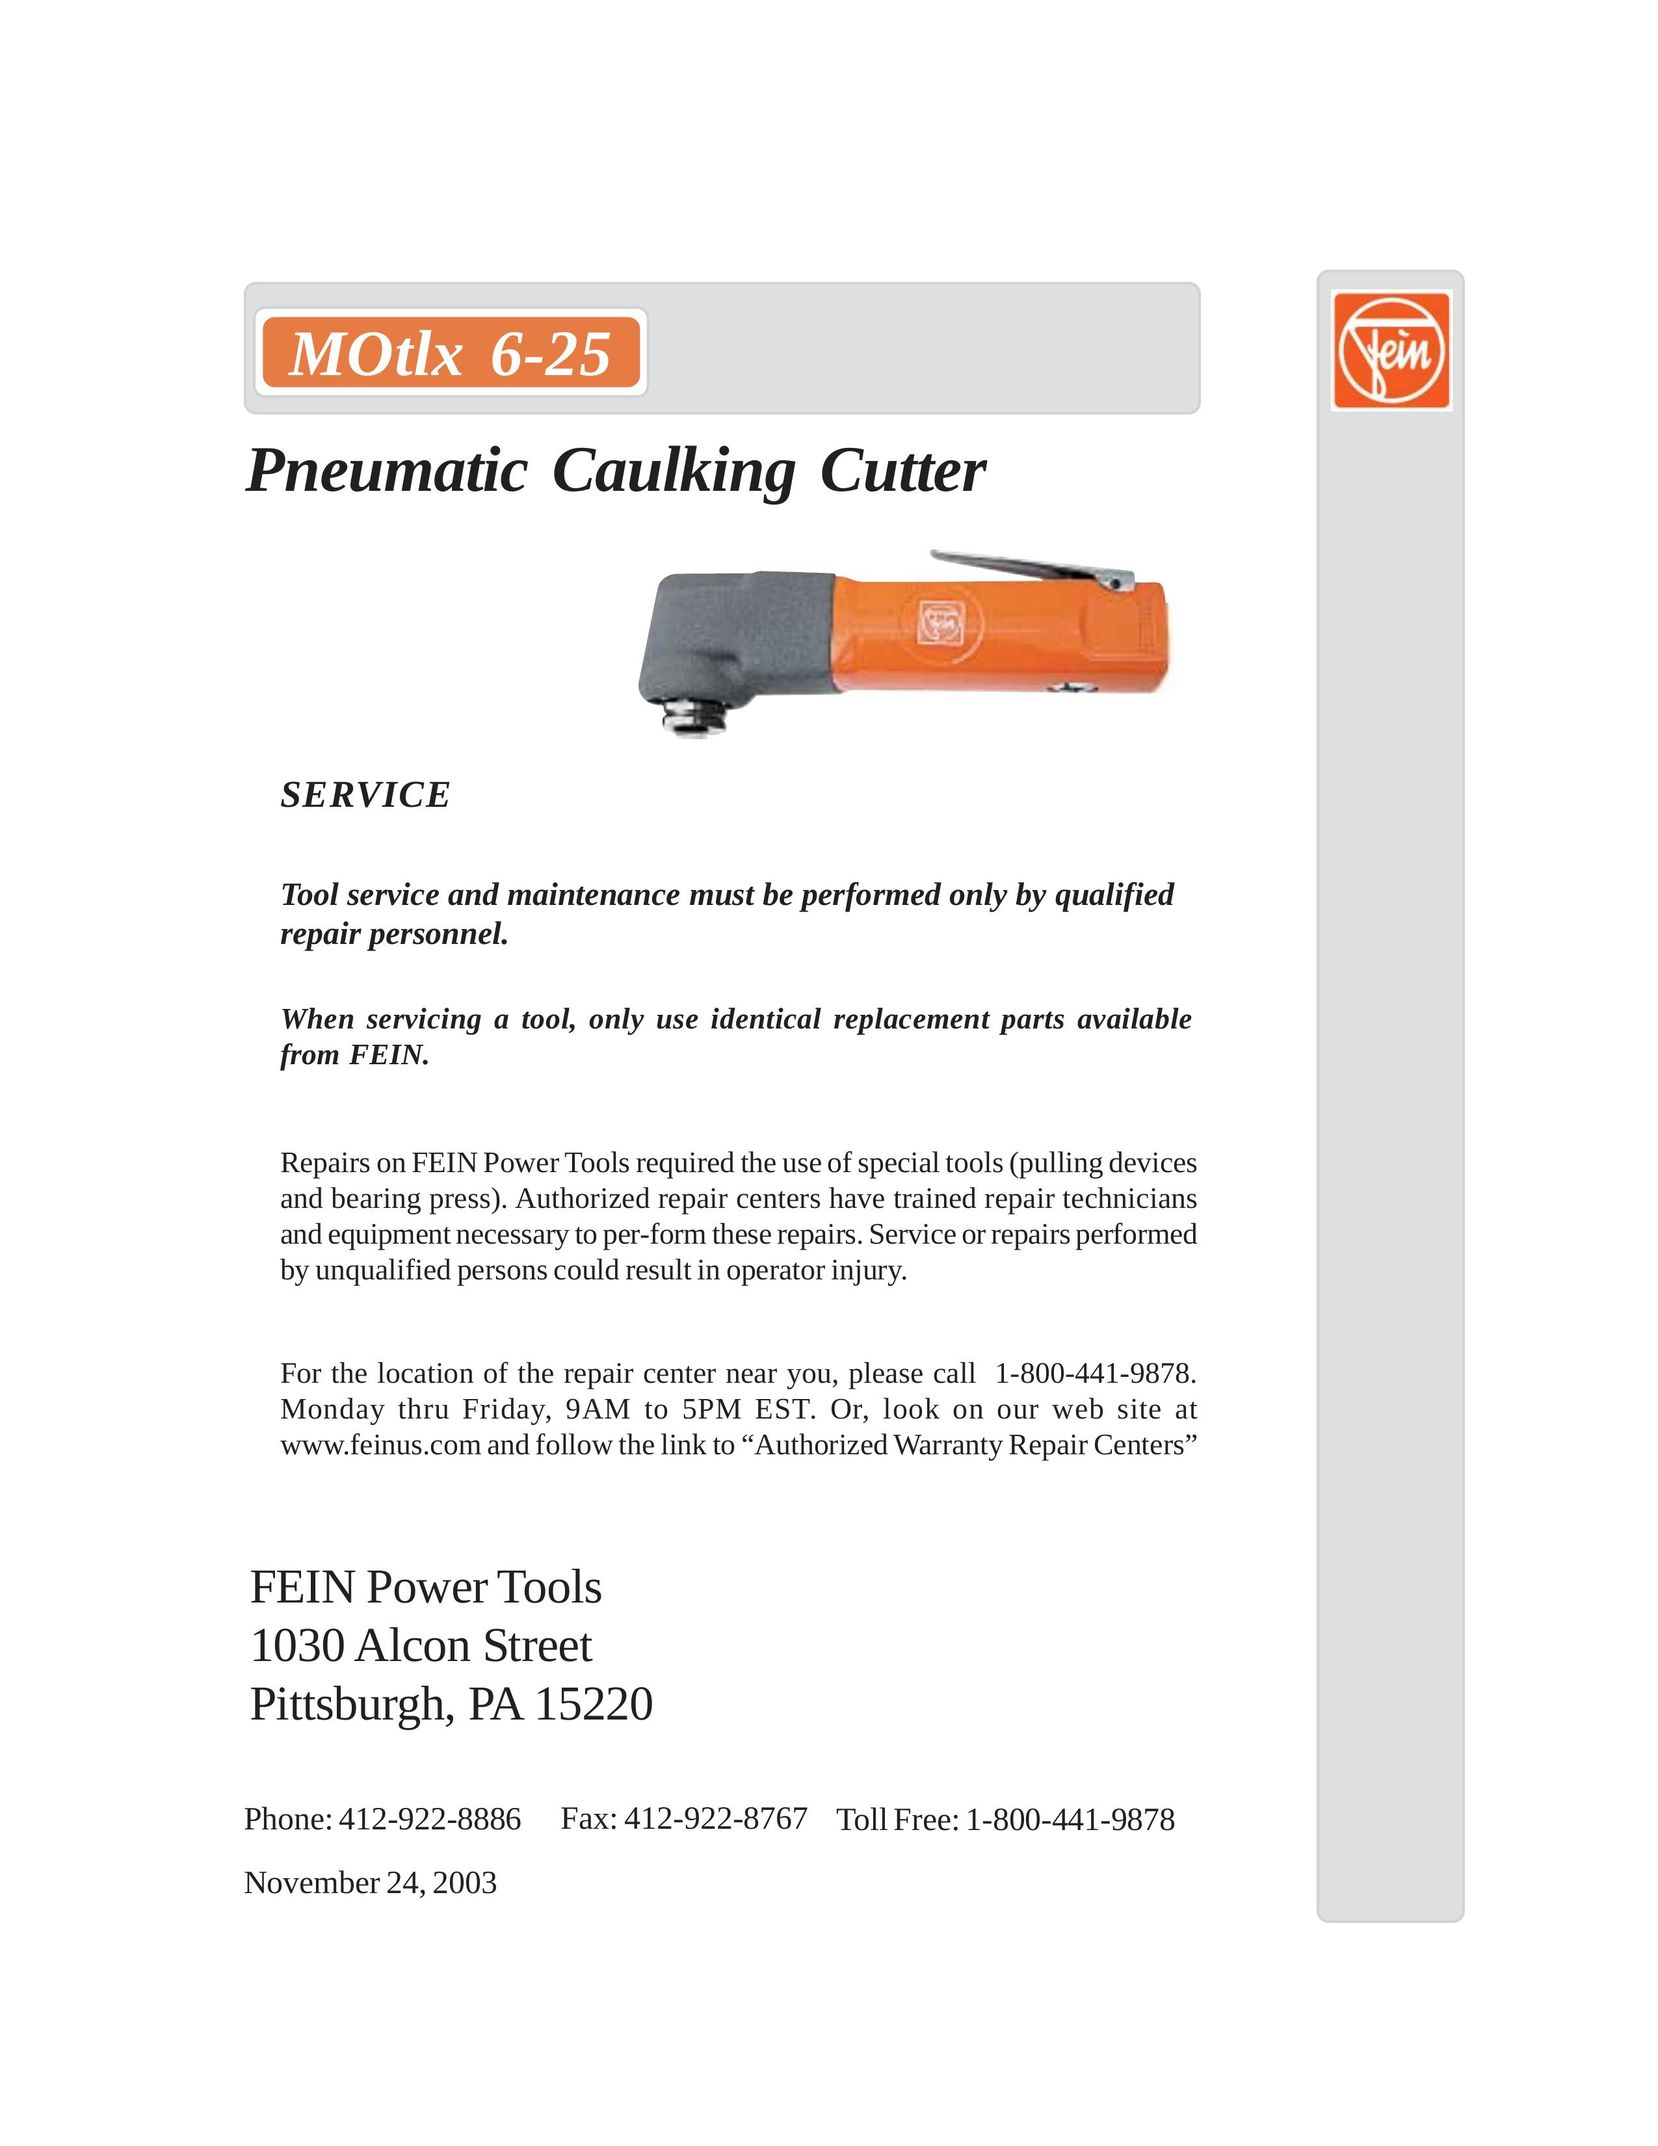 FEIN Power Tools MOtlx 6-25 Welder User Manual